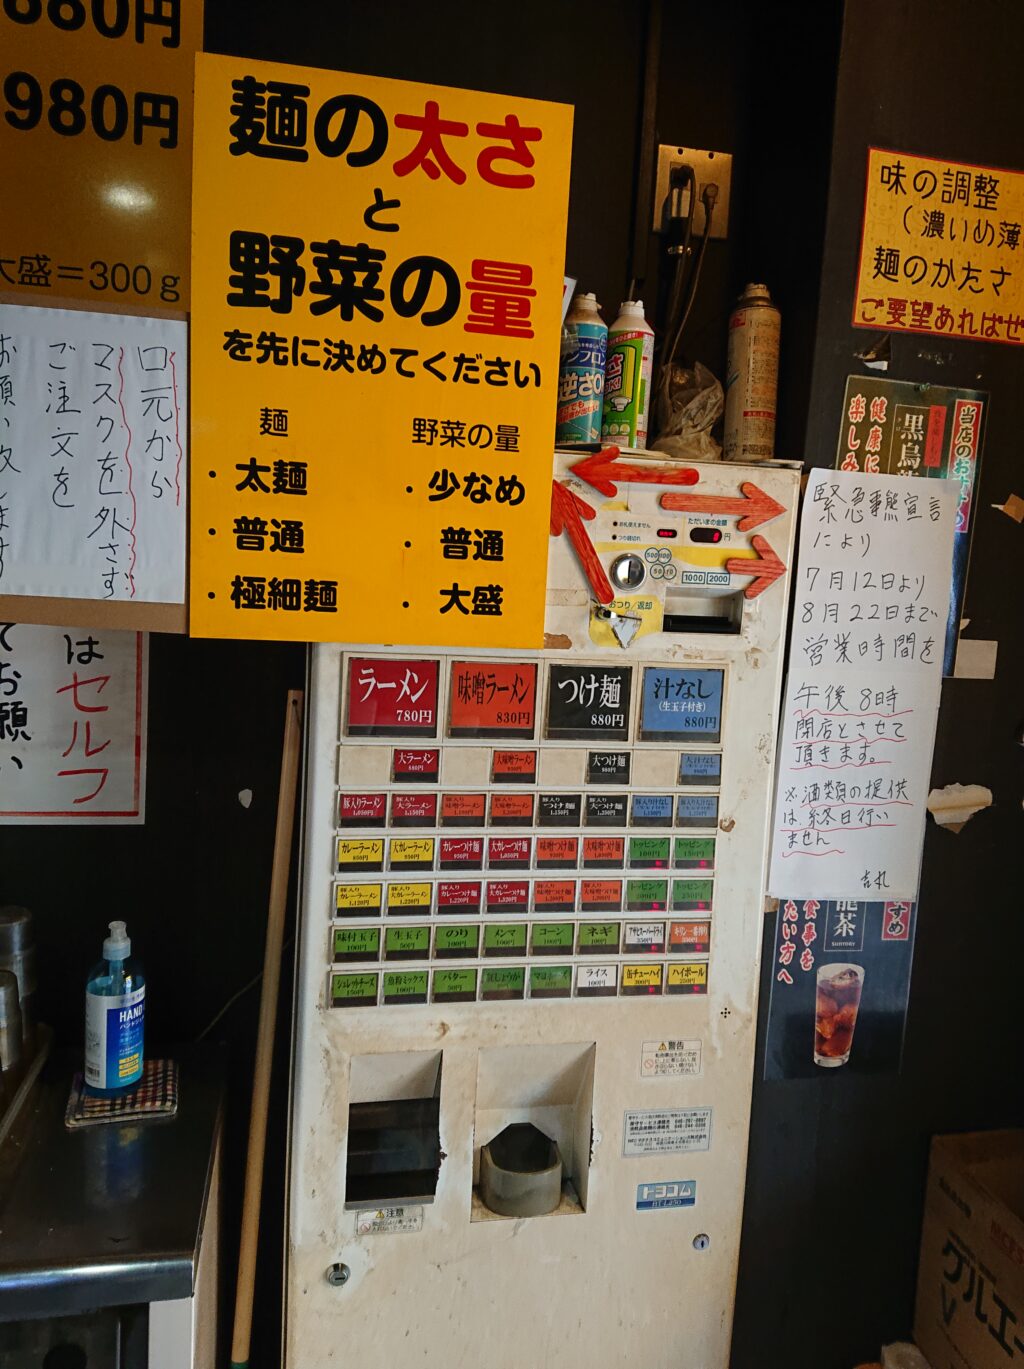 ラーメン 麺徳 東陽町店 食券機